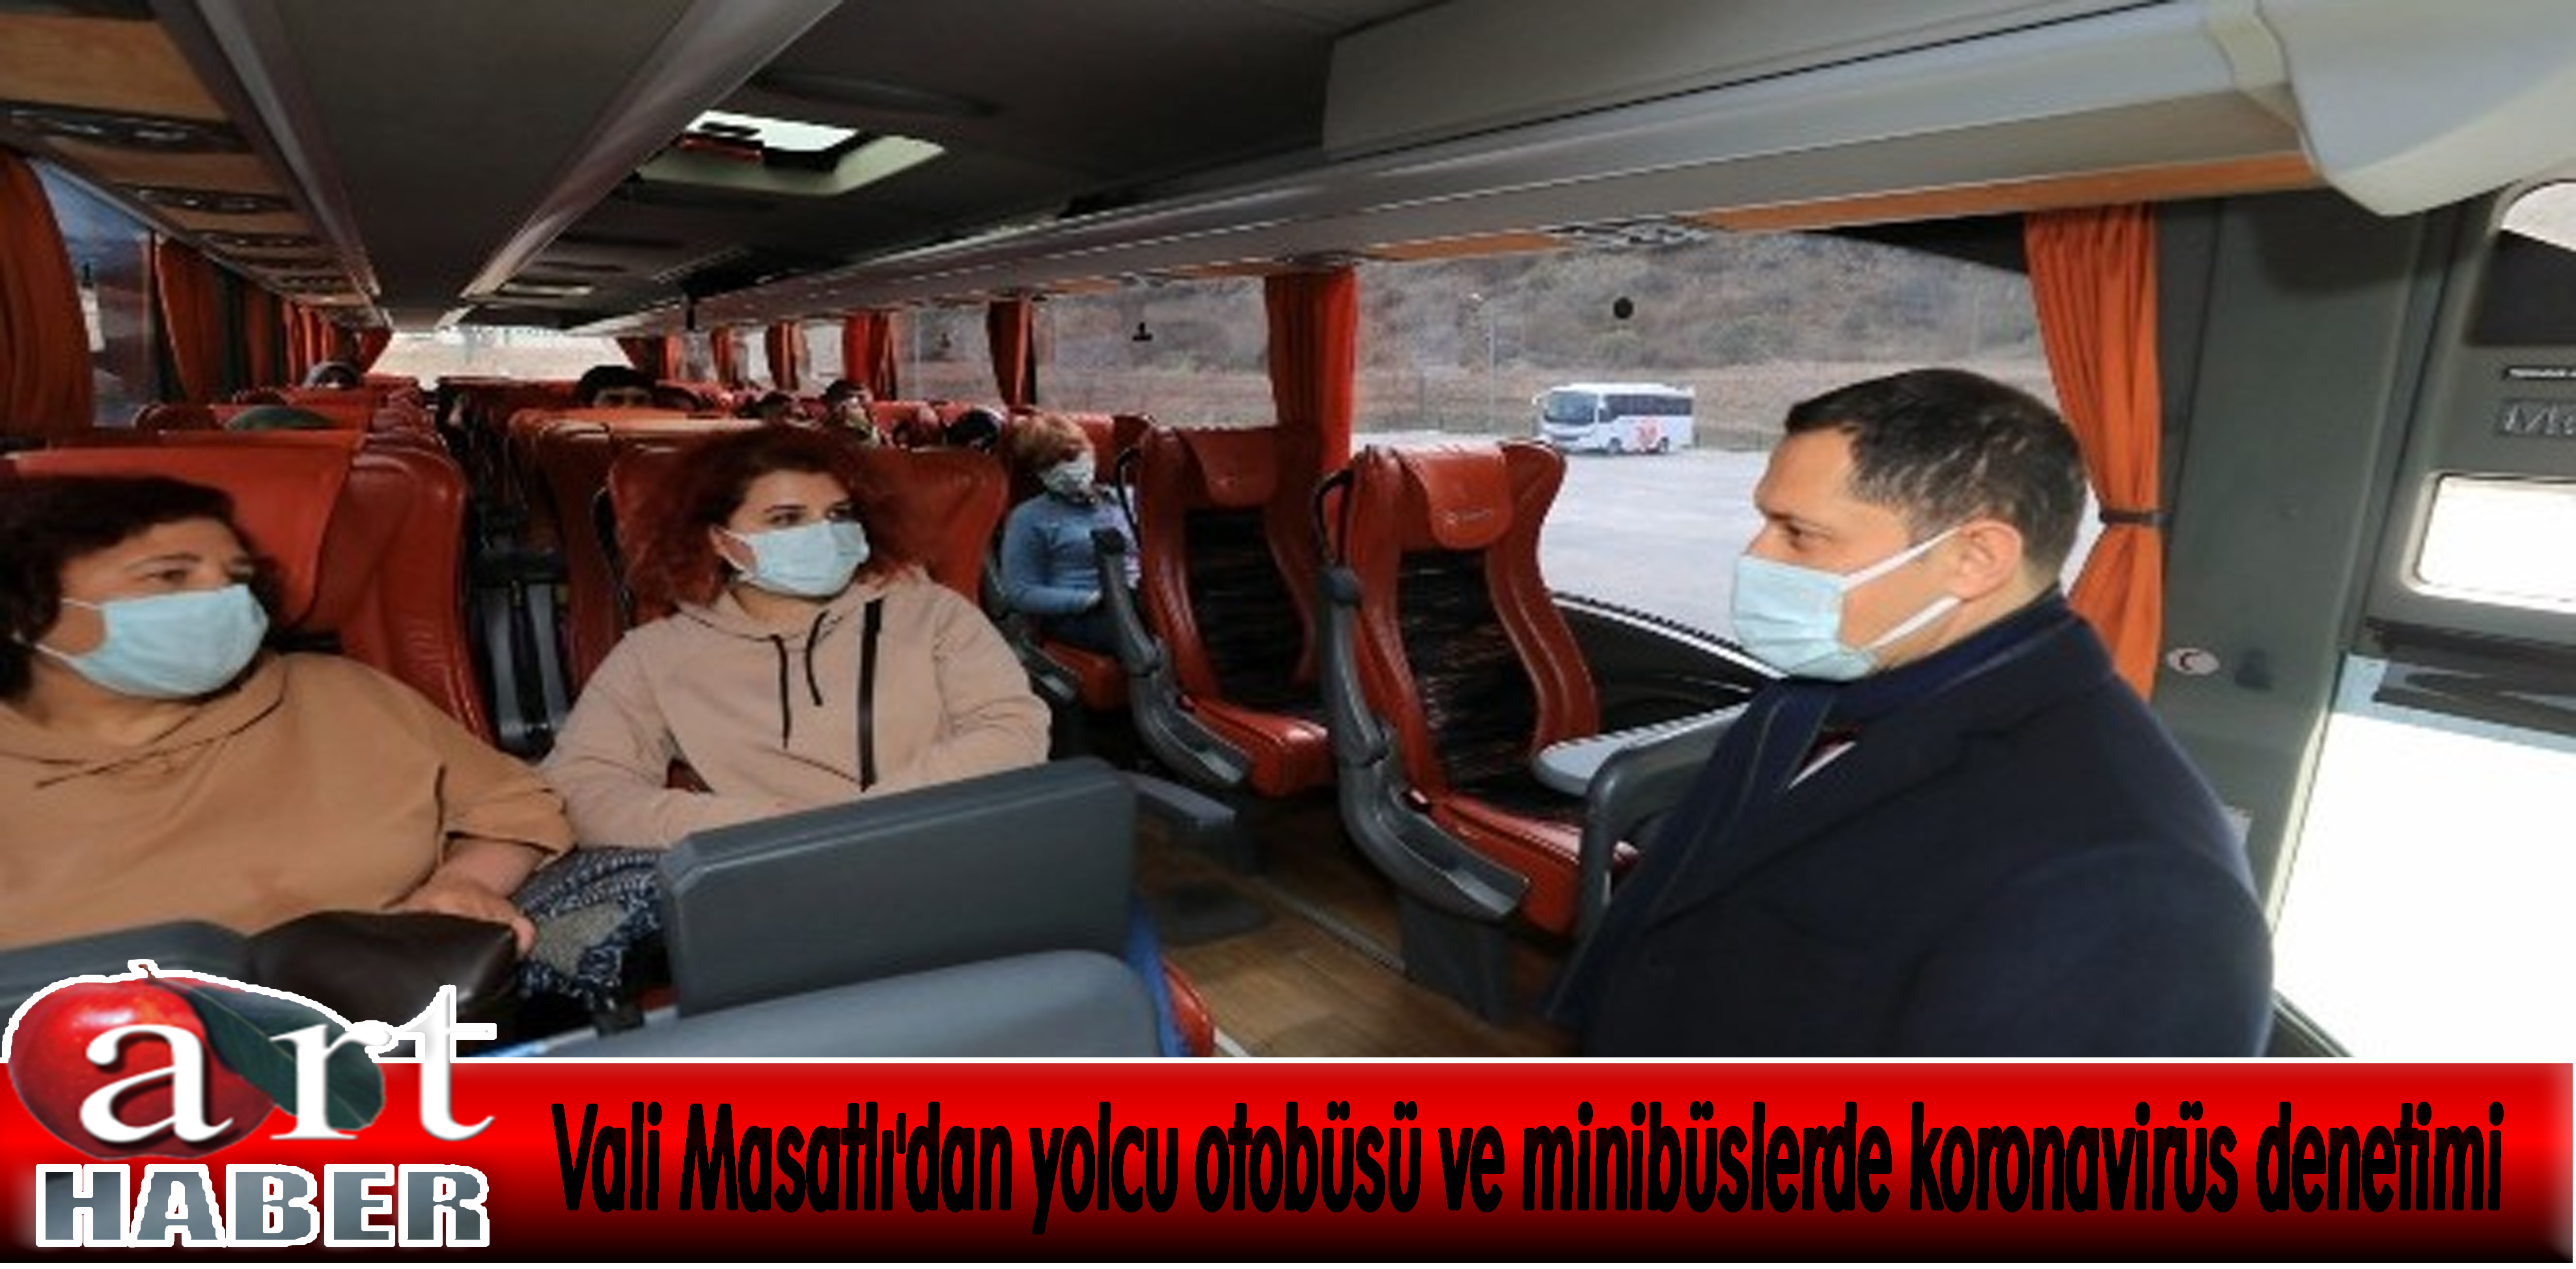 Vali Masatlı’dan yolcu otobüsü ve minibüslerde koronavirüs denetimi